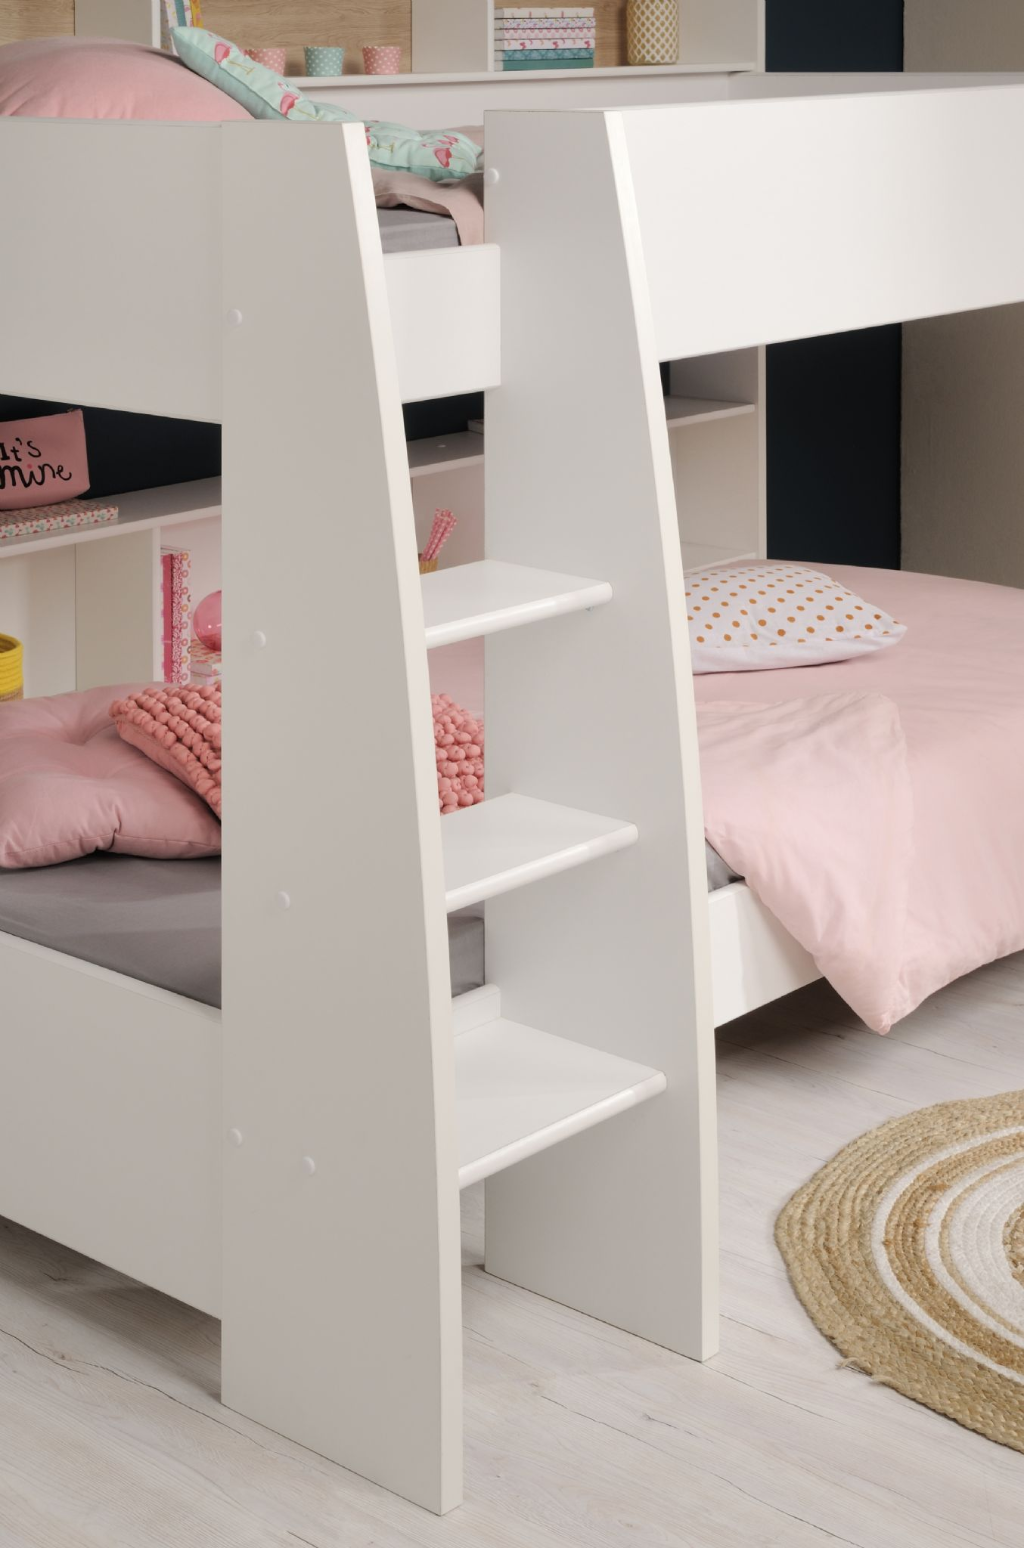 Kids Beds Parisot Tam 4 Bed, Bunk Beds For 4 Kids